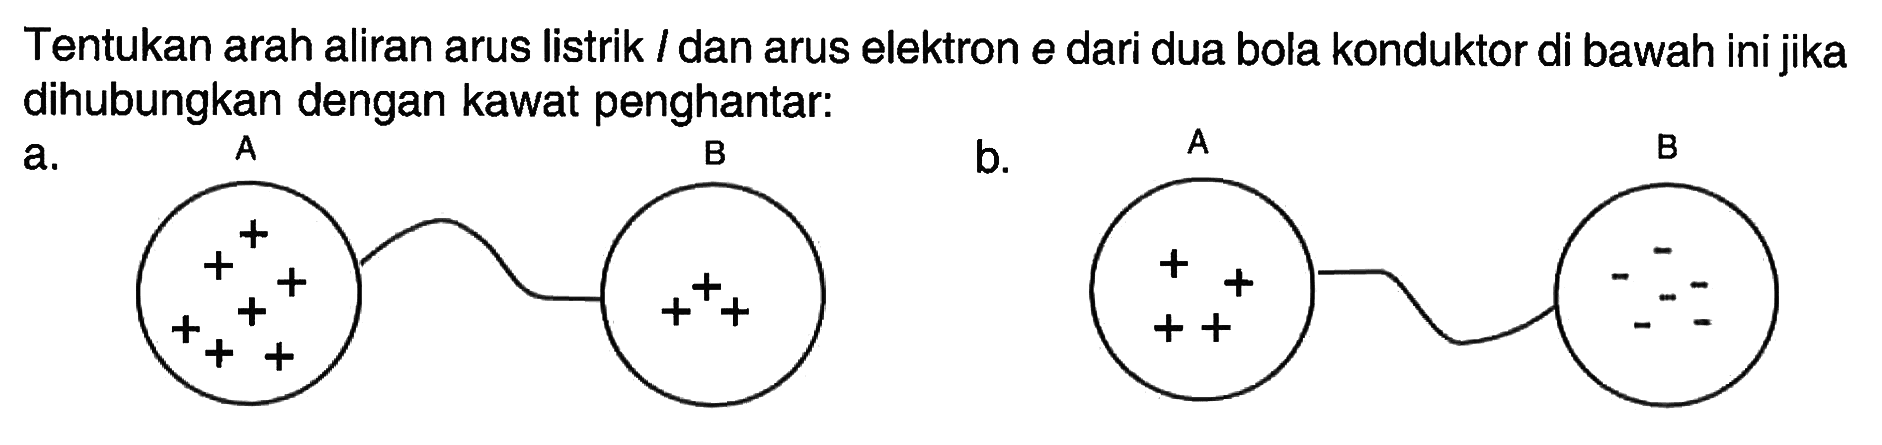 Tentukan arah aliran arus listrik l dan arus elektron e dari dua bola konduktor di bawah ini jika dihubungkan dengan kawat penghantar: a. A B b. A B